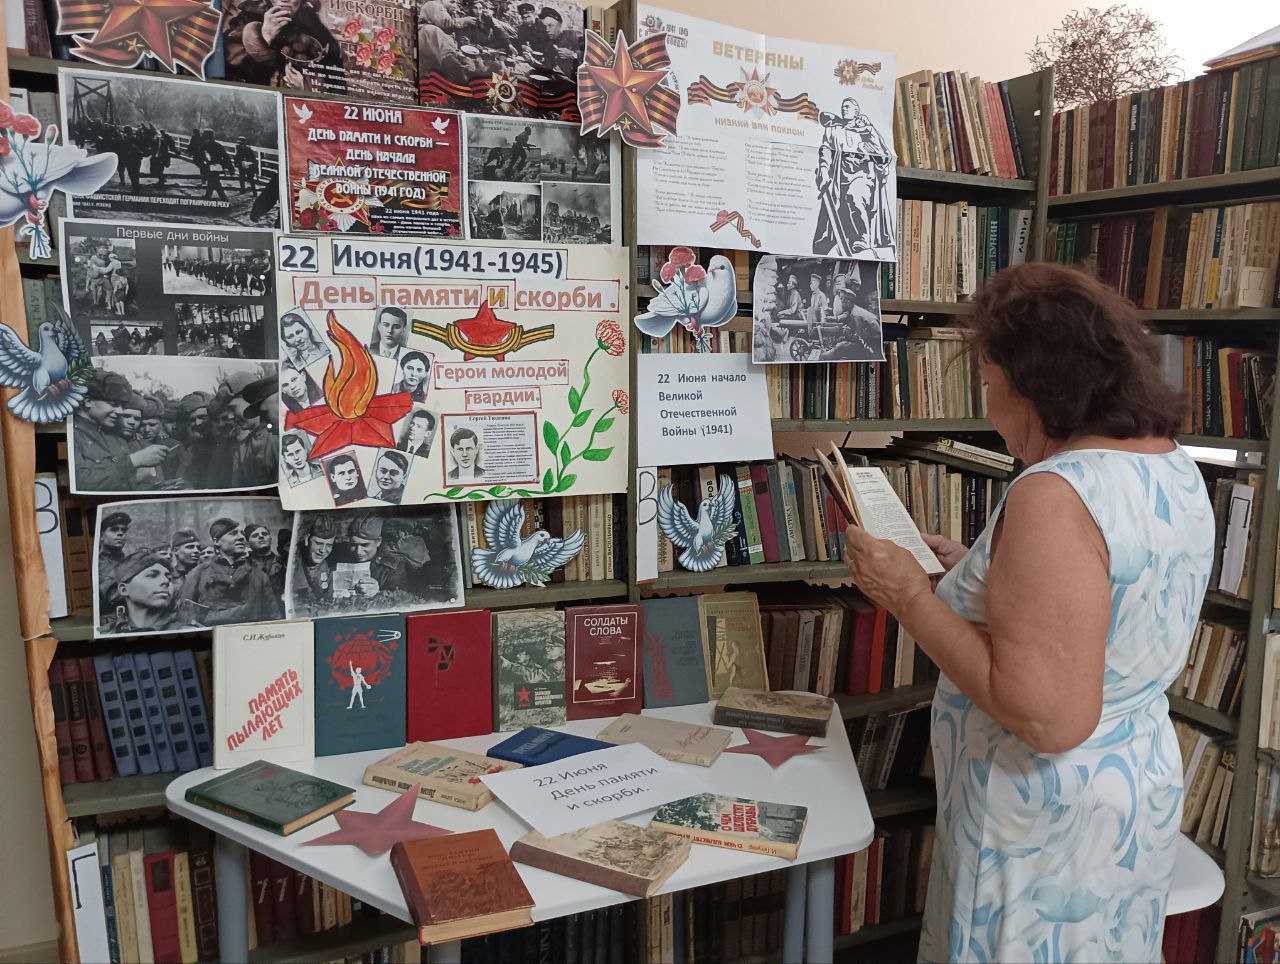 Ко Дню памяти и скорби 22 июня в библиотеках филиалах Чаплынского муниципального округа  прошли мероприятия.